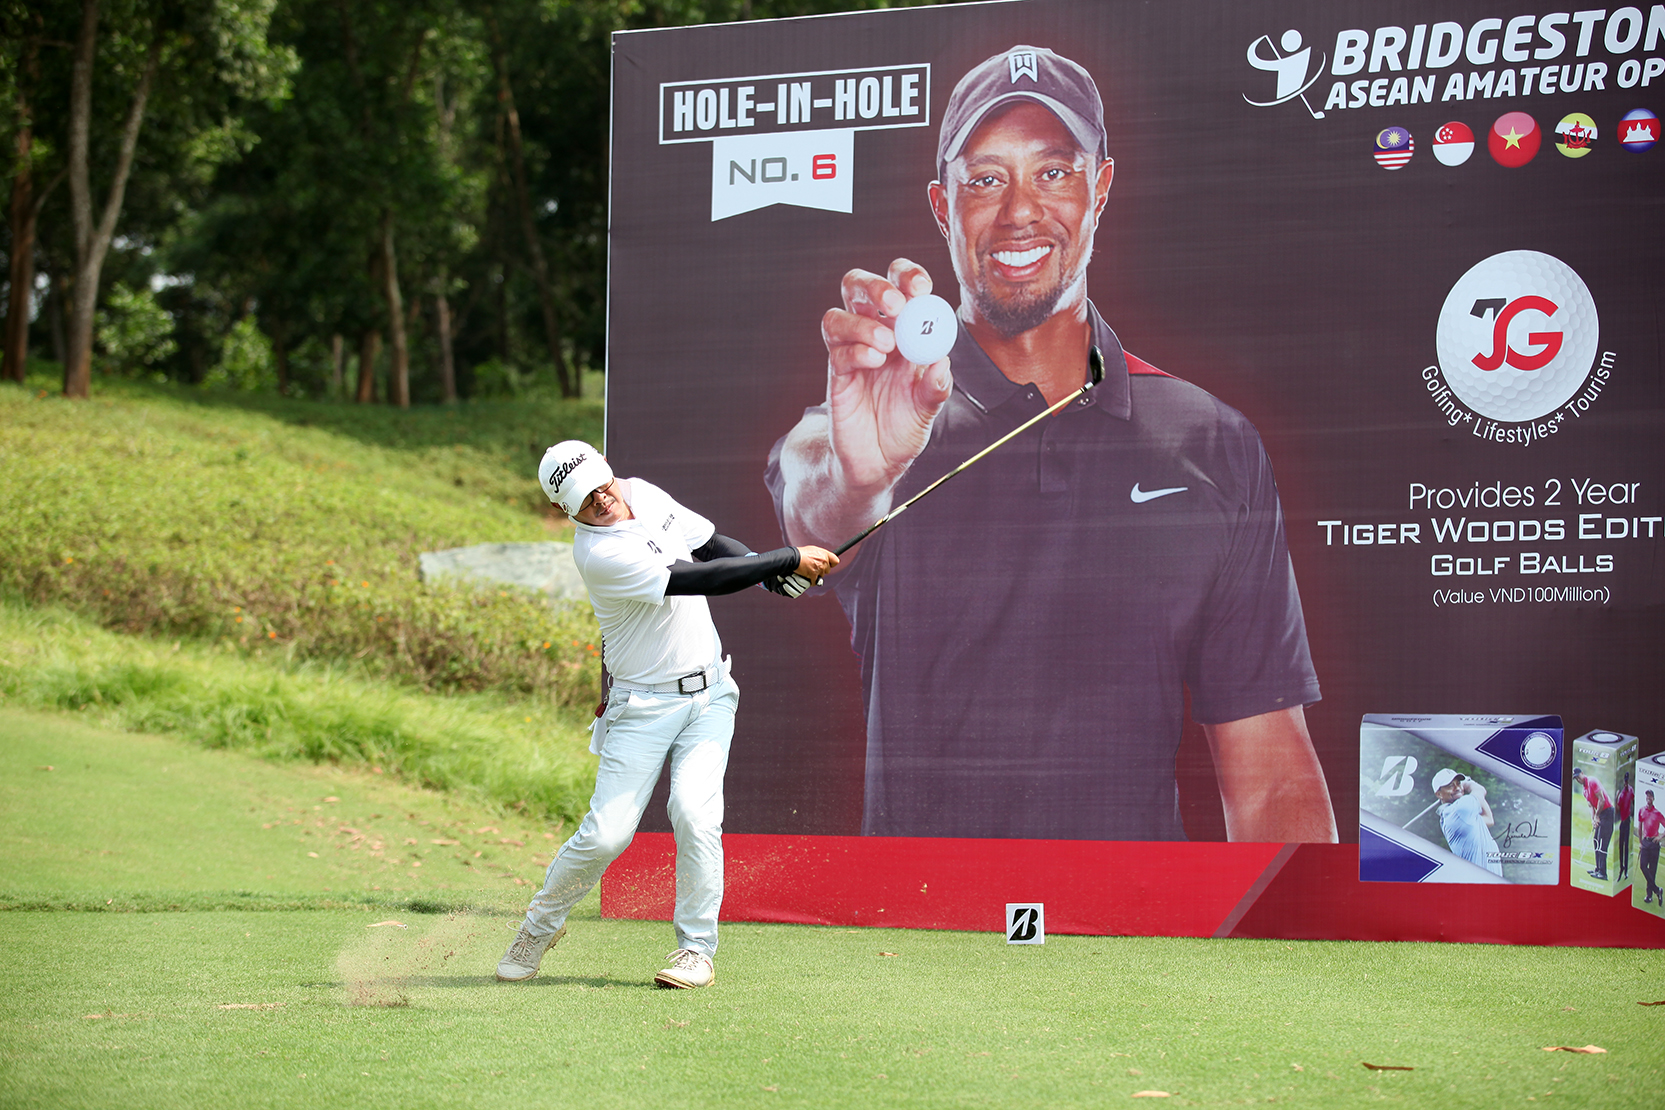 Bridgestone Asean Amateur Open 2018 tại Hà Nội: 4 golfer sẽ được chọn để tham dự vòng chung kết tại Malaysia